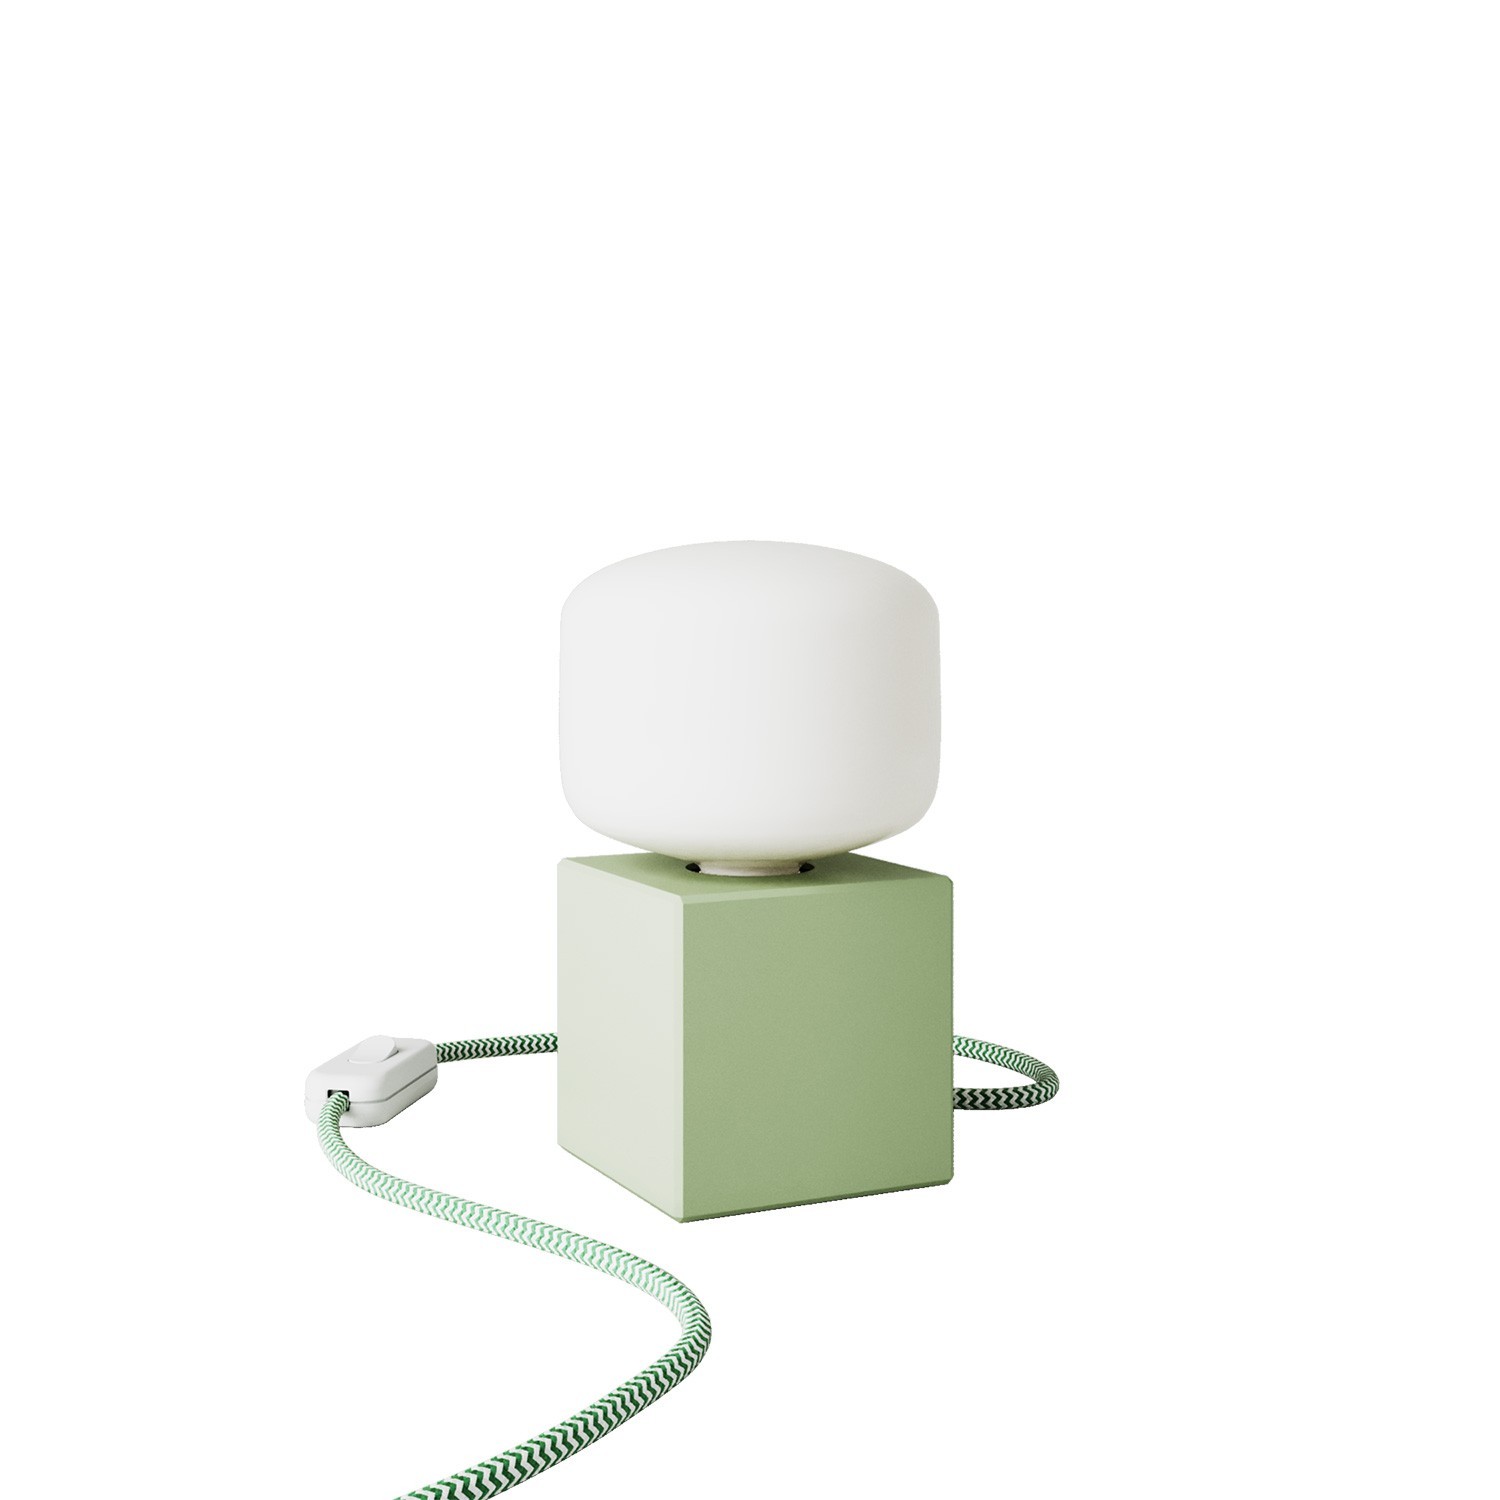 Zöld asztali lámpa - Cubetto